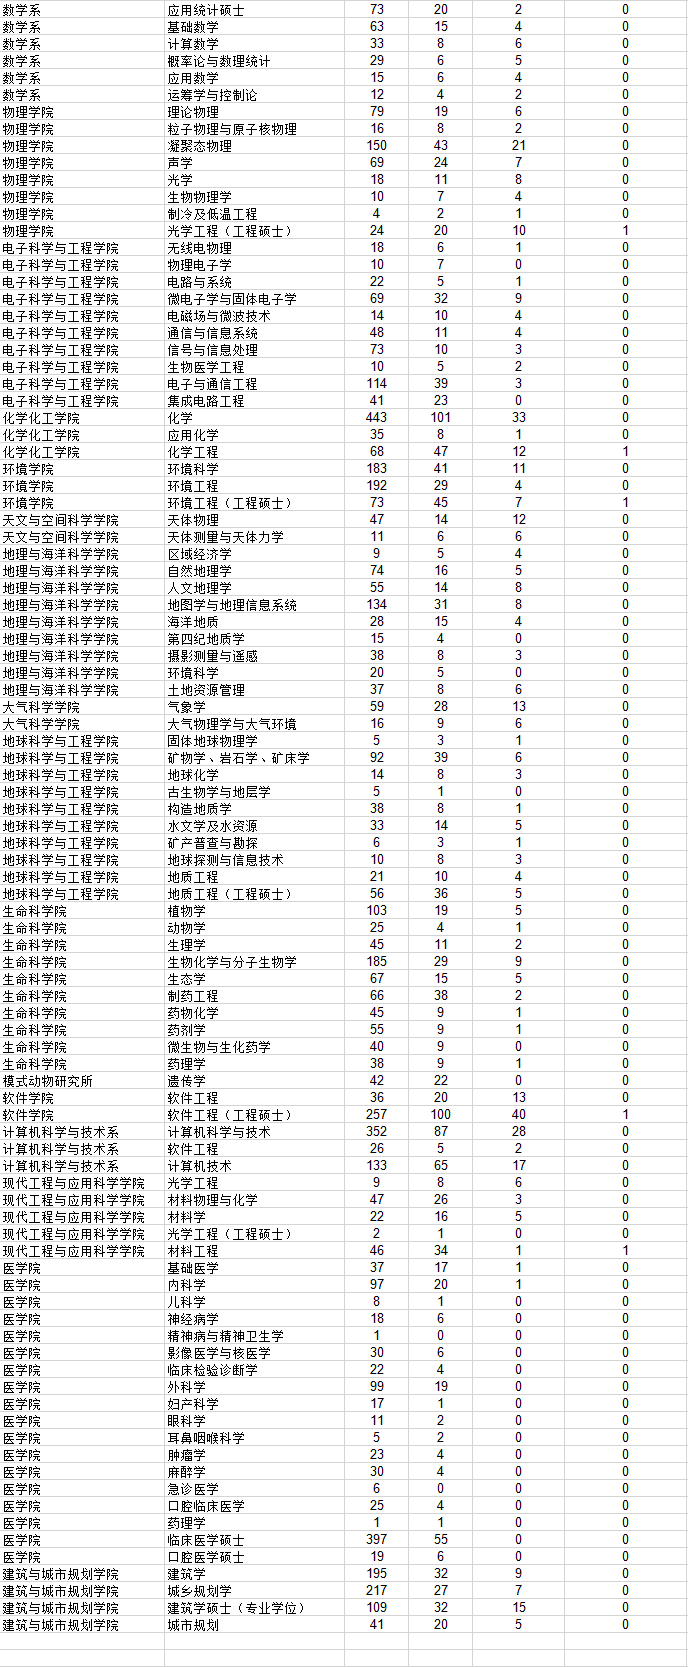 南京大学2013研究生报考录取比例